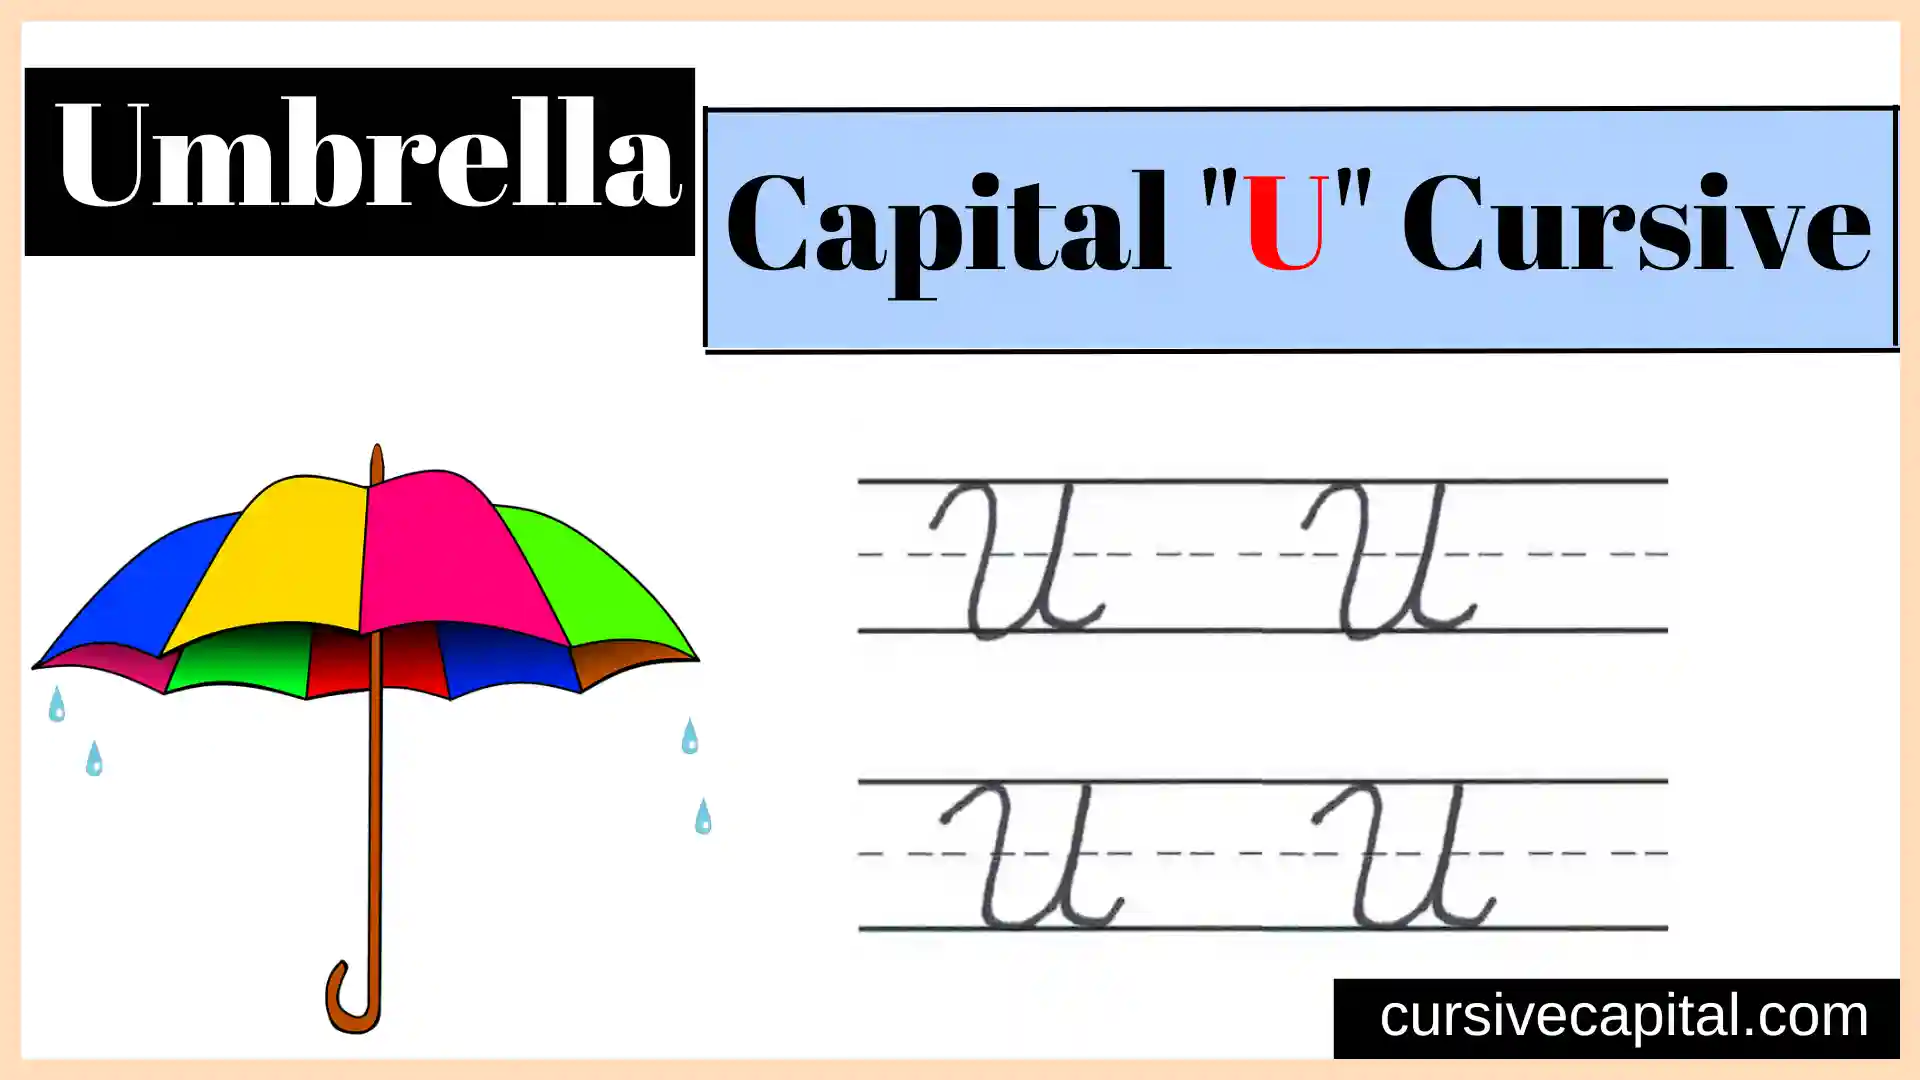 Capital U cursive